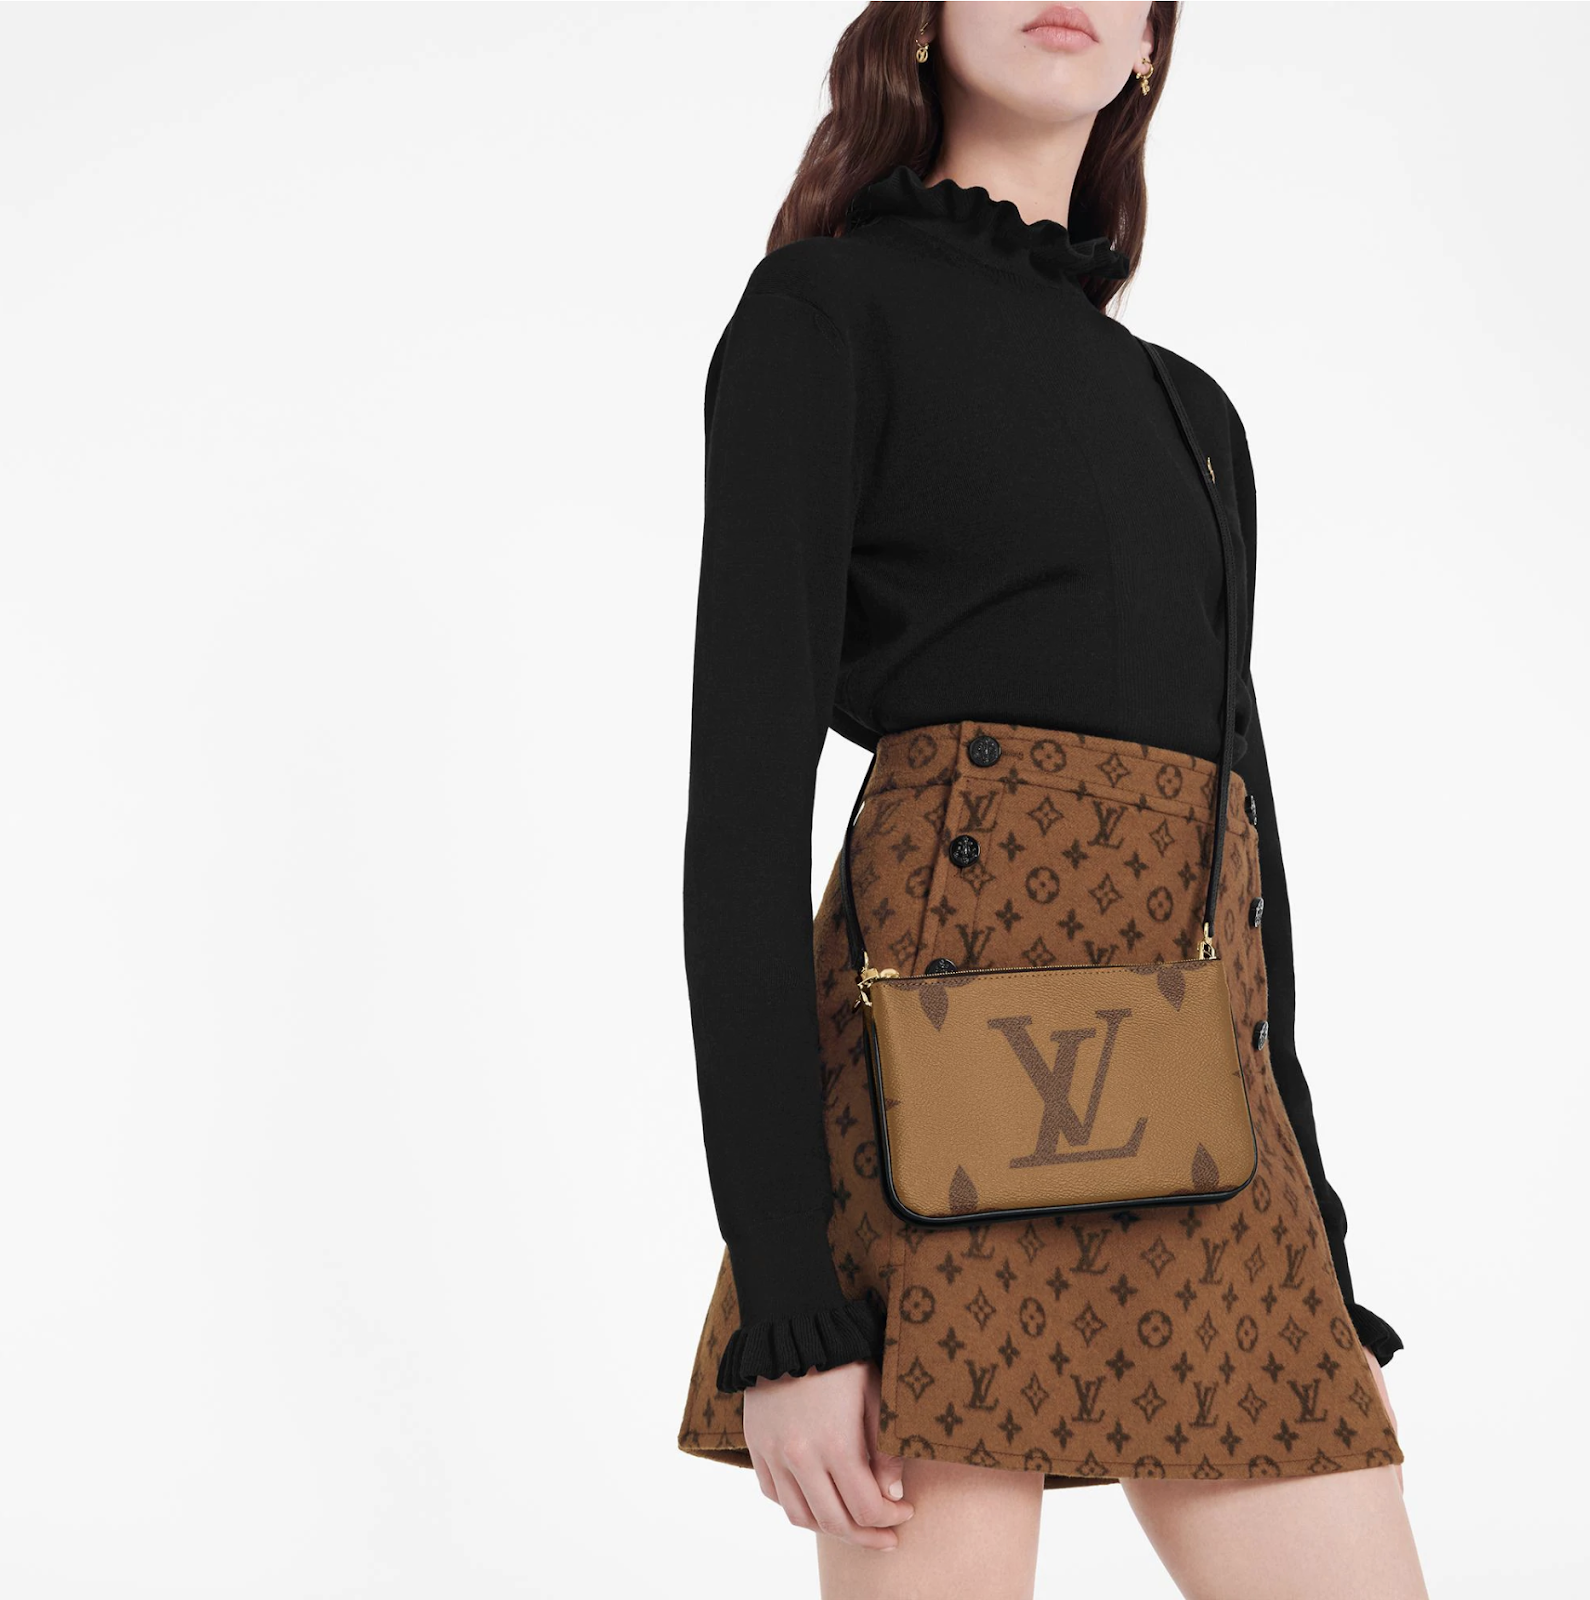 Louis Vuitton Double Zip Pochette REVIEW- What fits inside + Mod Shots 